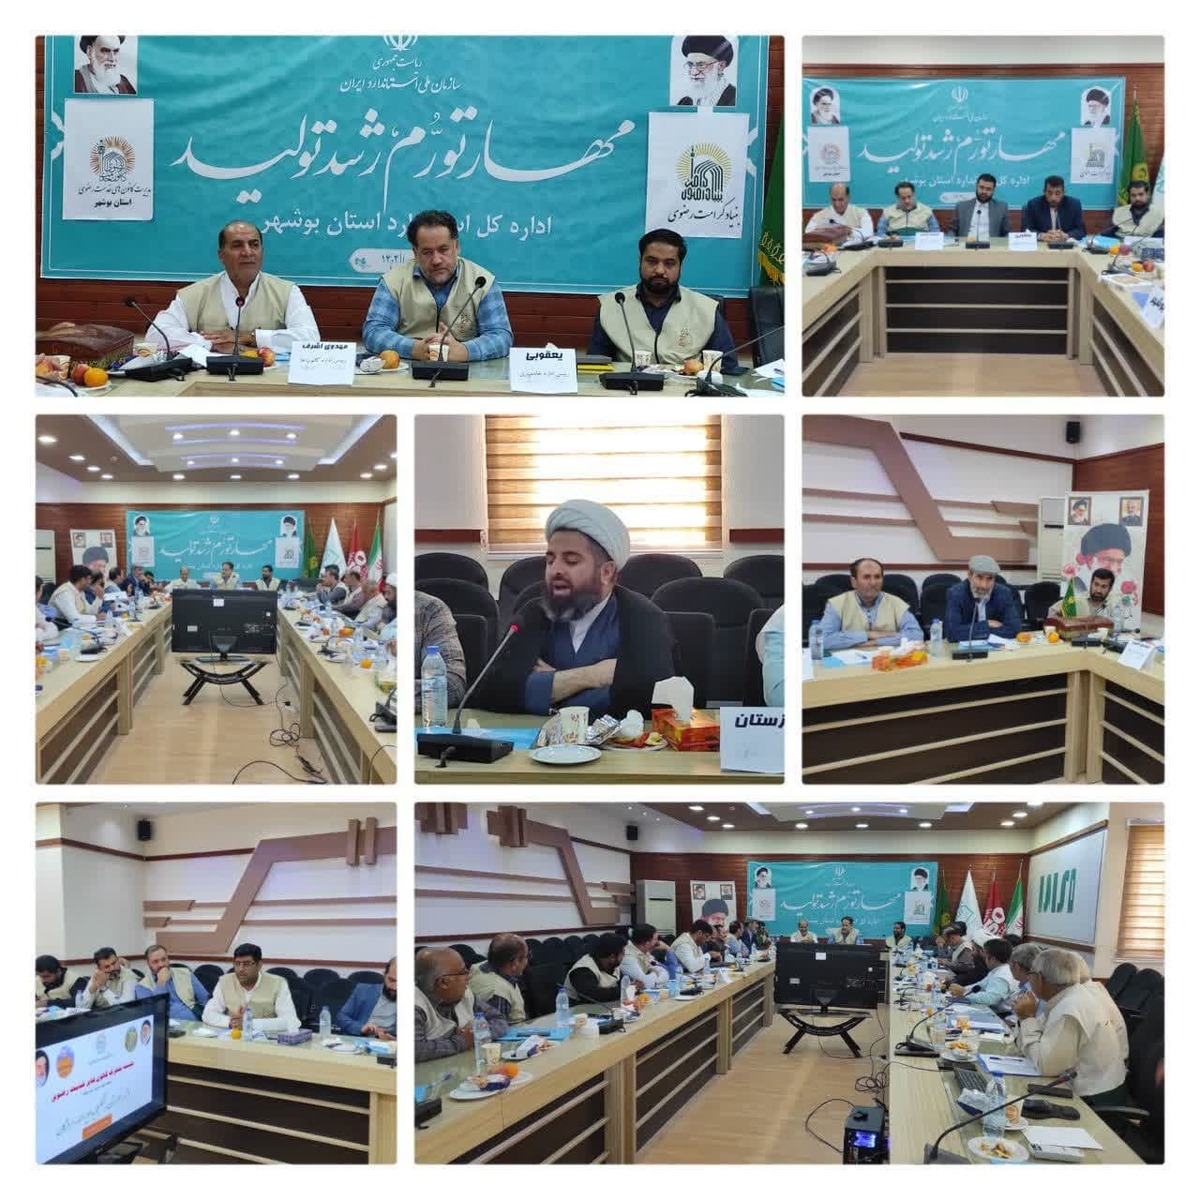 نخستین گردهمایی کانون های خدمت رضوی استان های جنوب کشور در استان بوشهر برگزار شد